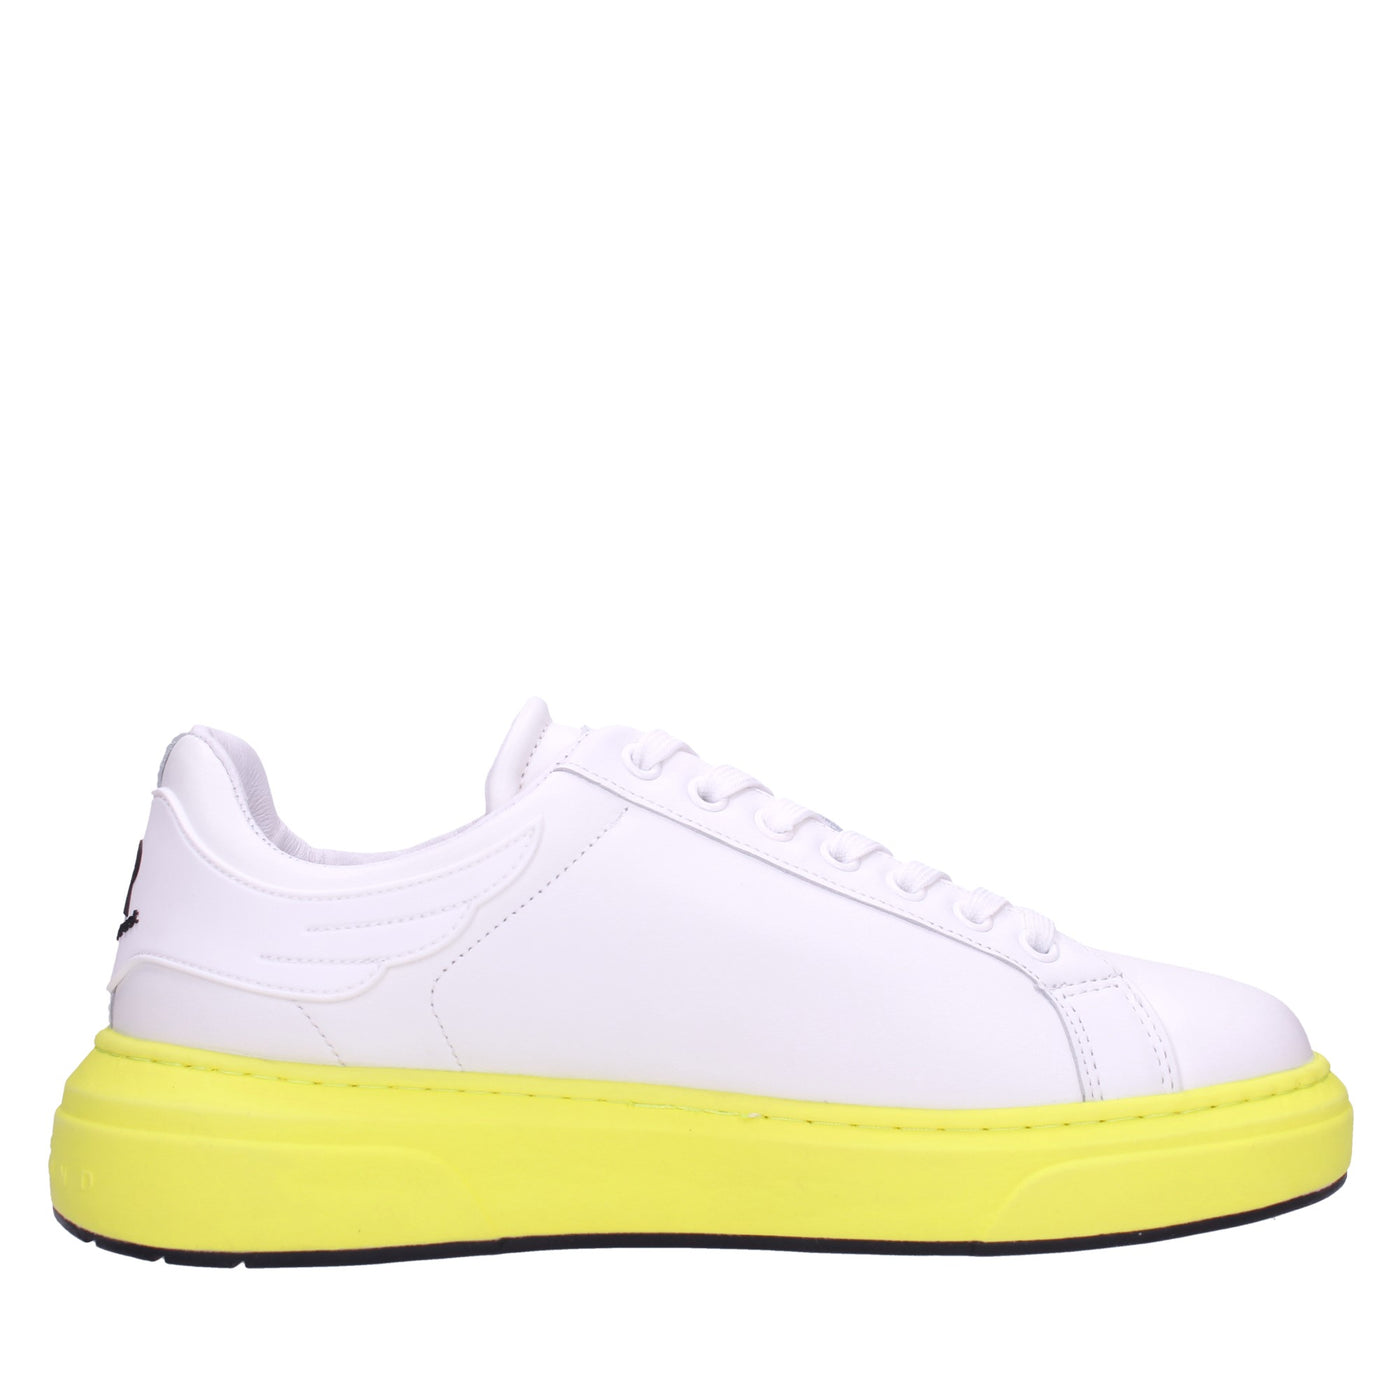 John richmond Sneakers#colore_bianco